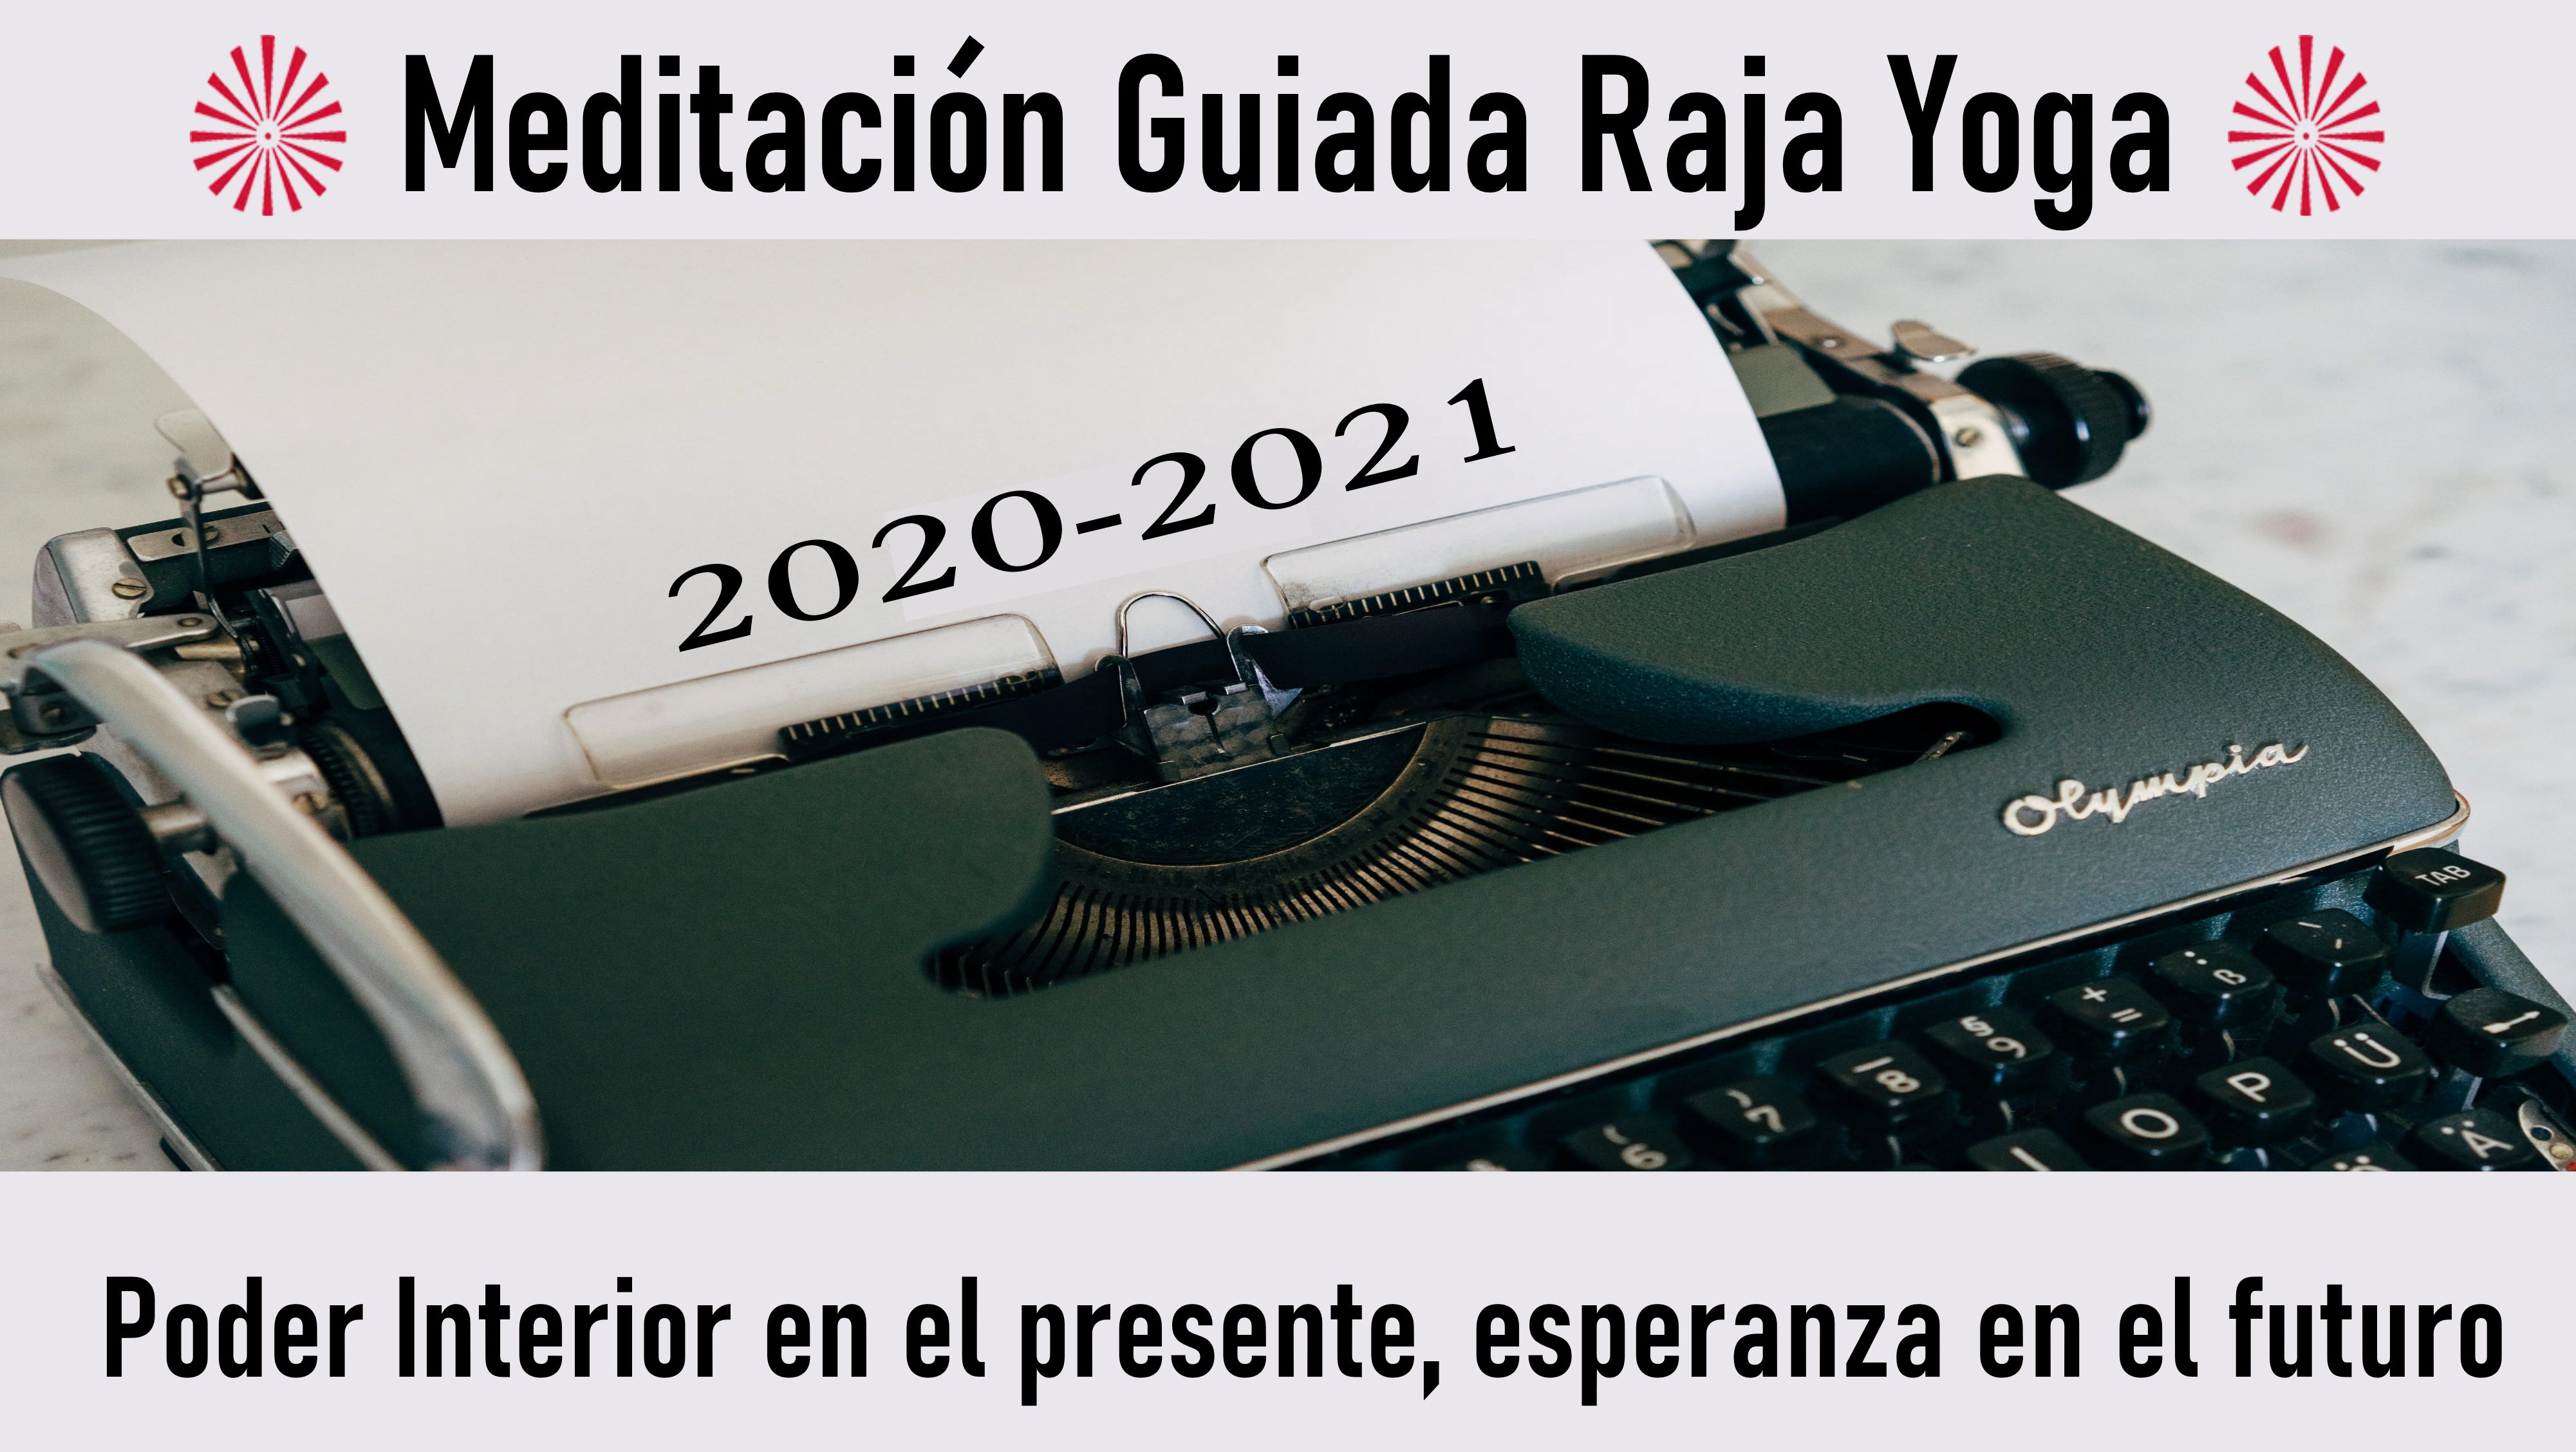 Meditación Raja Yoga: Poder Interior en el presente, esperanza en el futuro (31 Agosto 2020) On-line desde Madrid